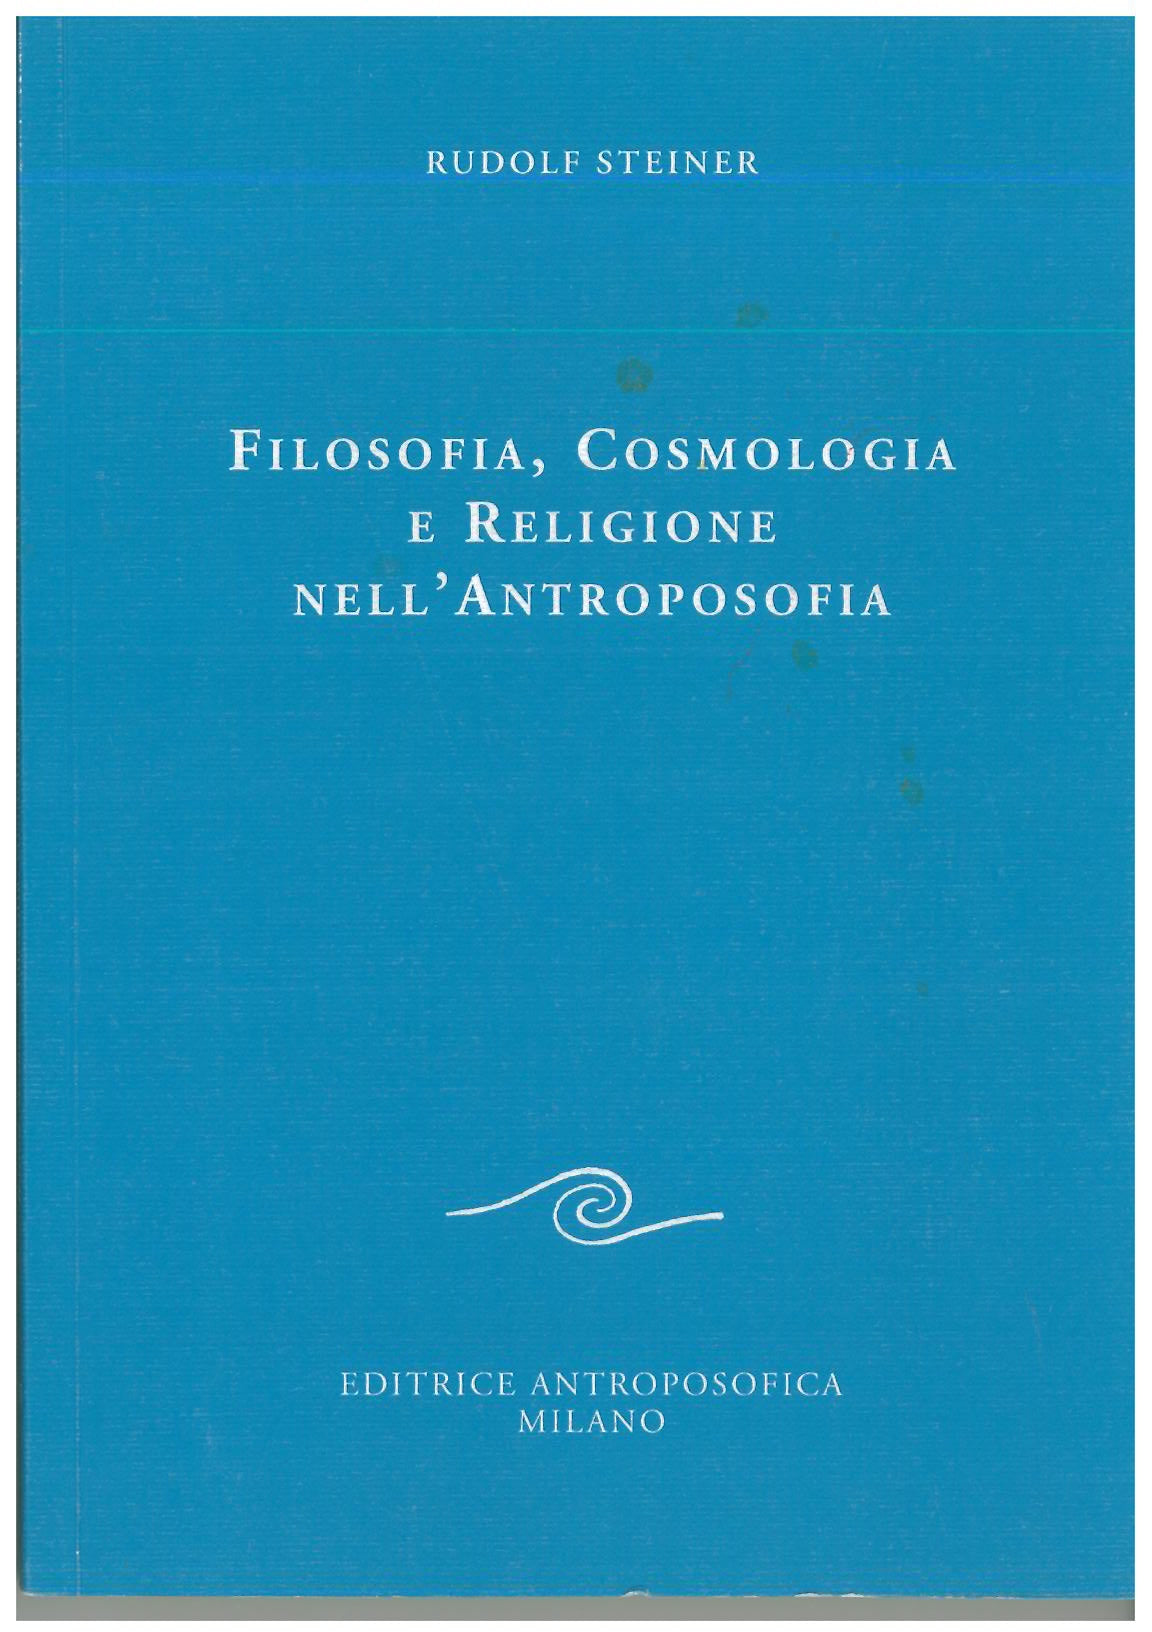 Filosofia, cosmologia e religione nell'antroposofia - Rudolf Steiner